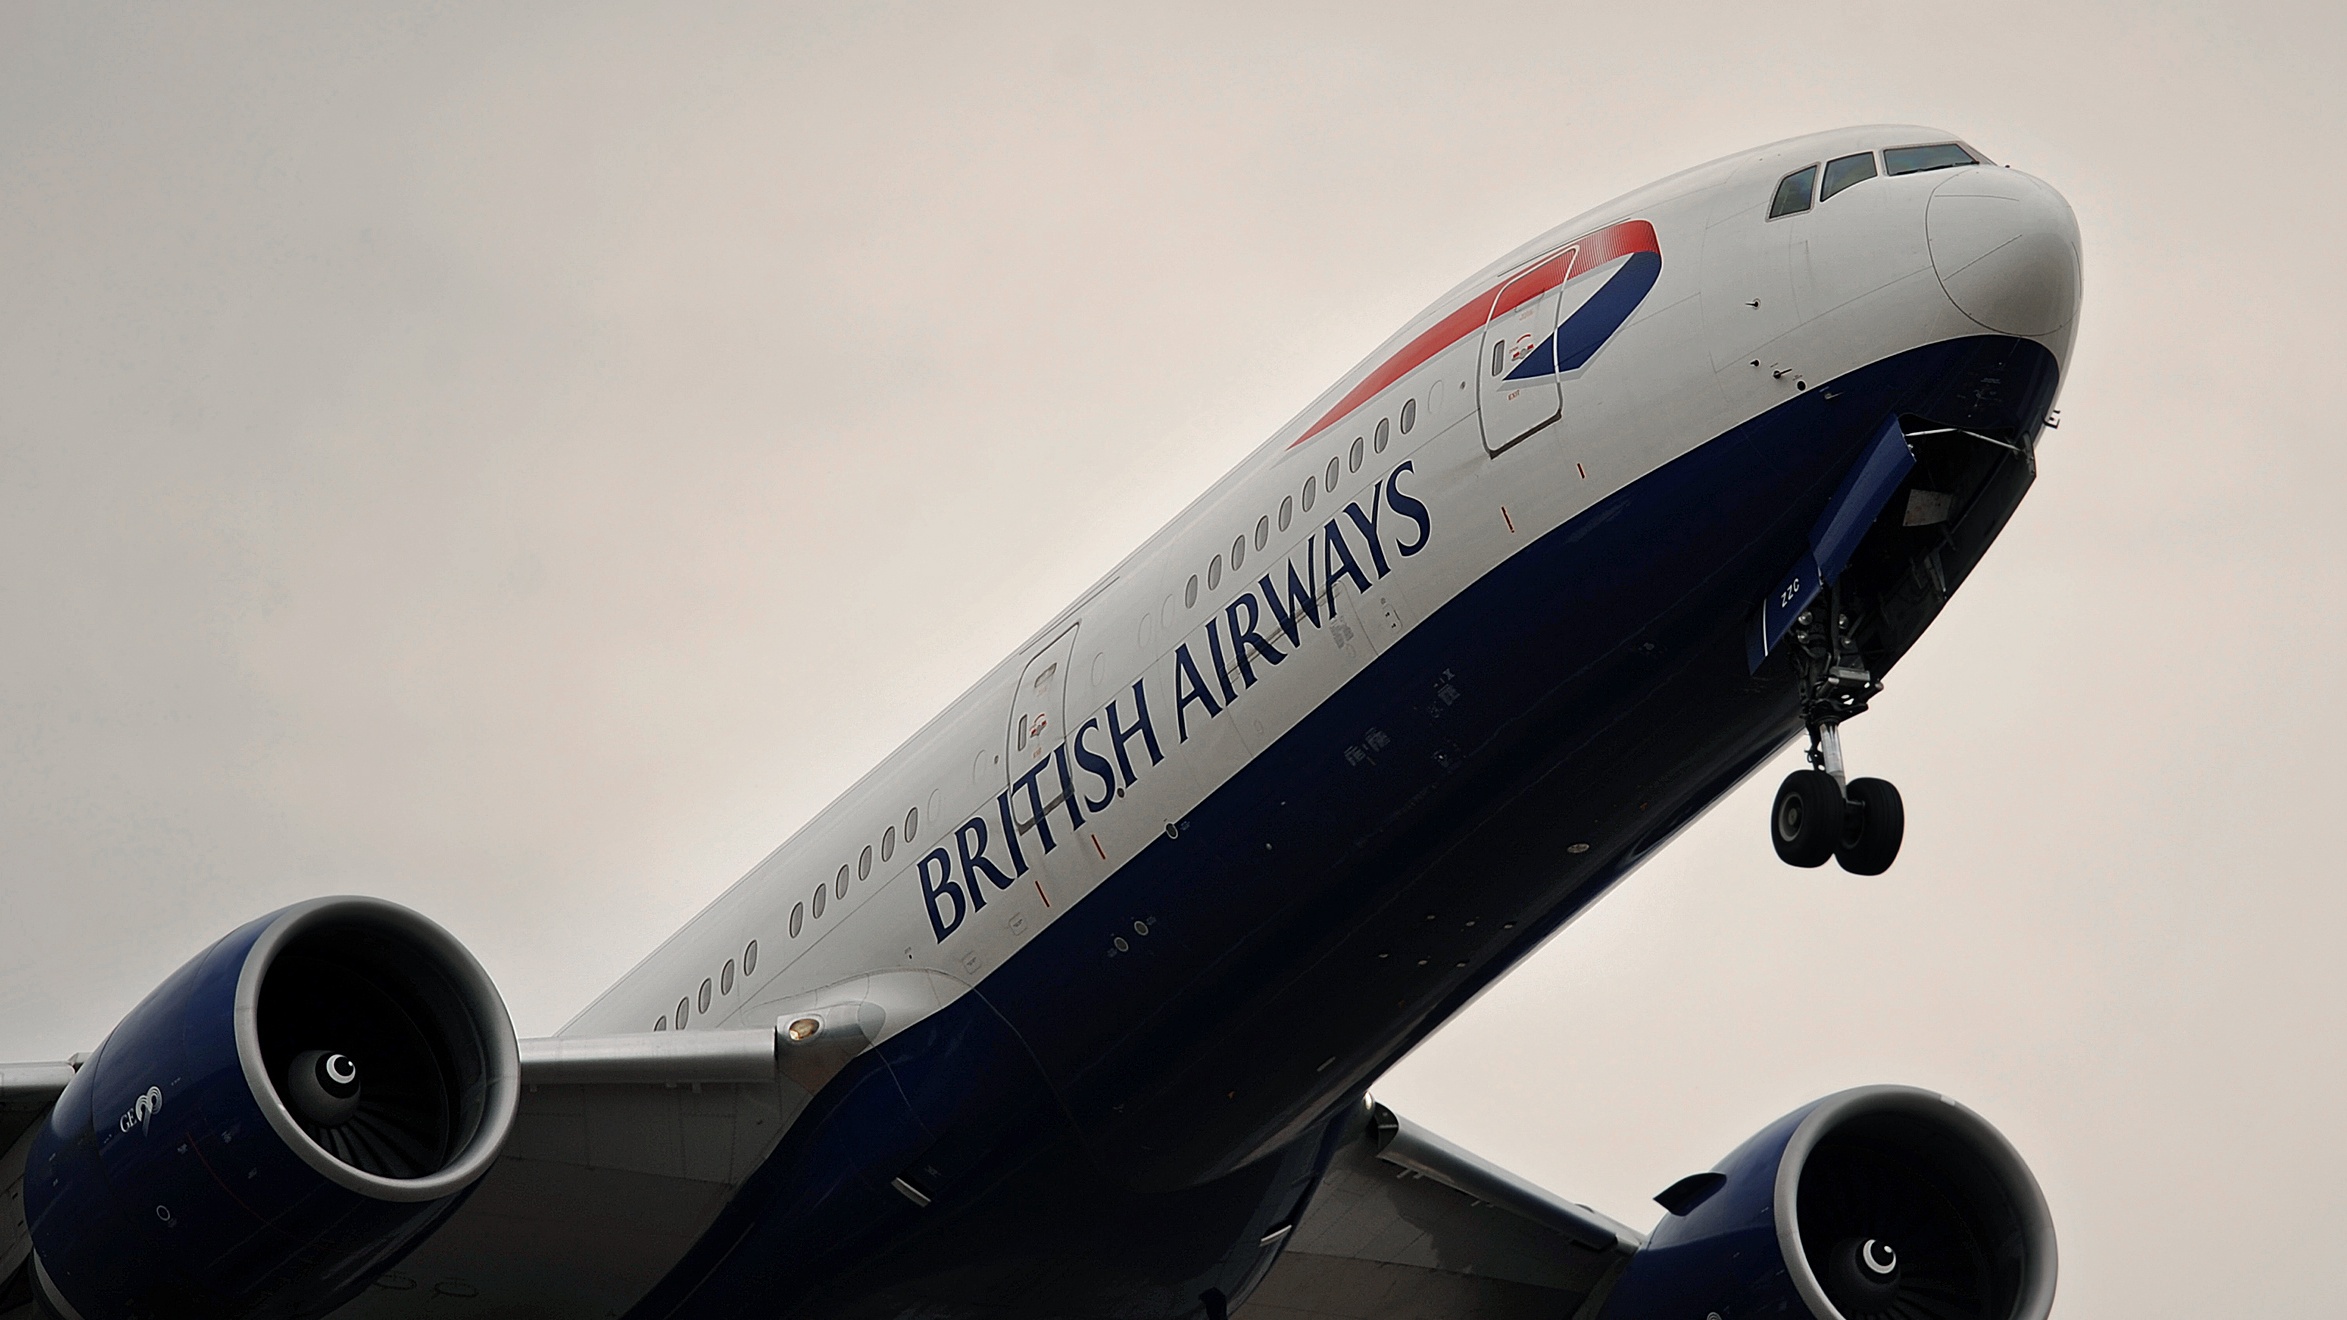 A British Airways flight takes off